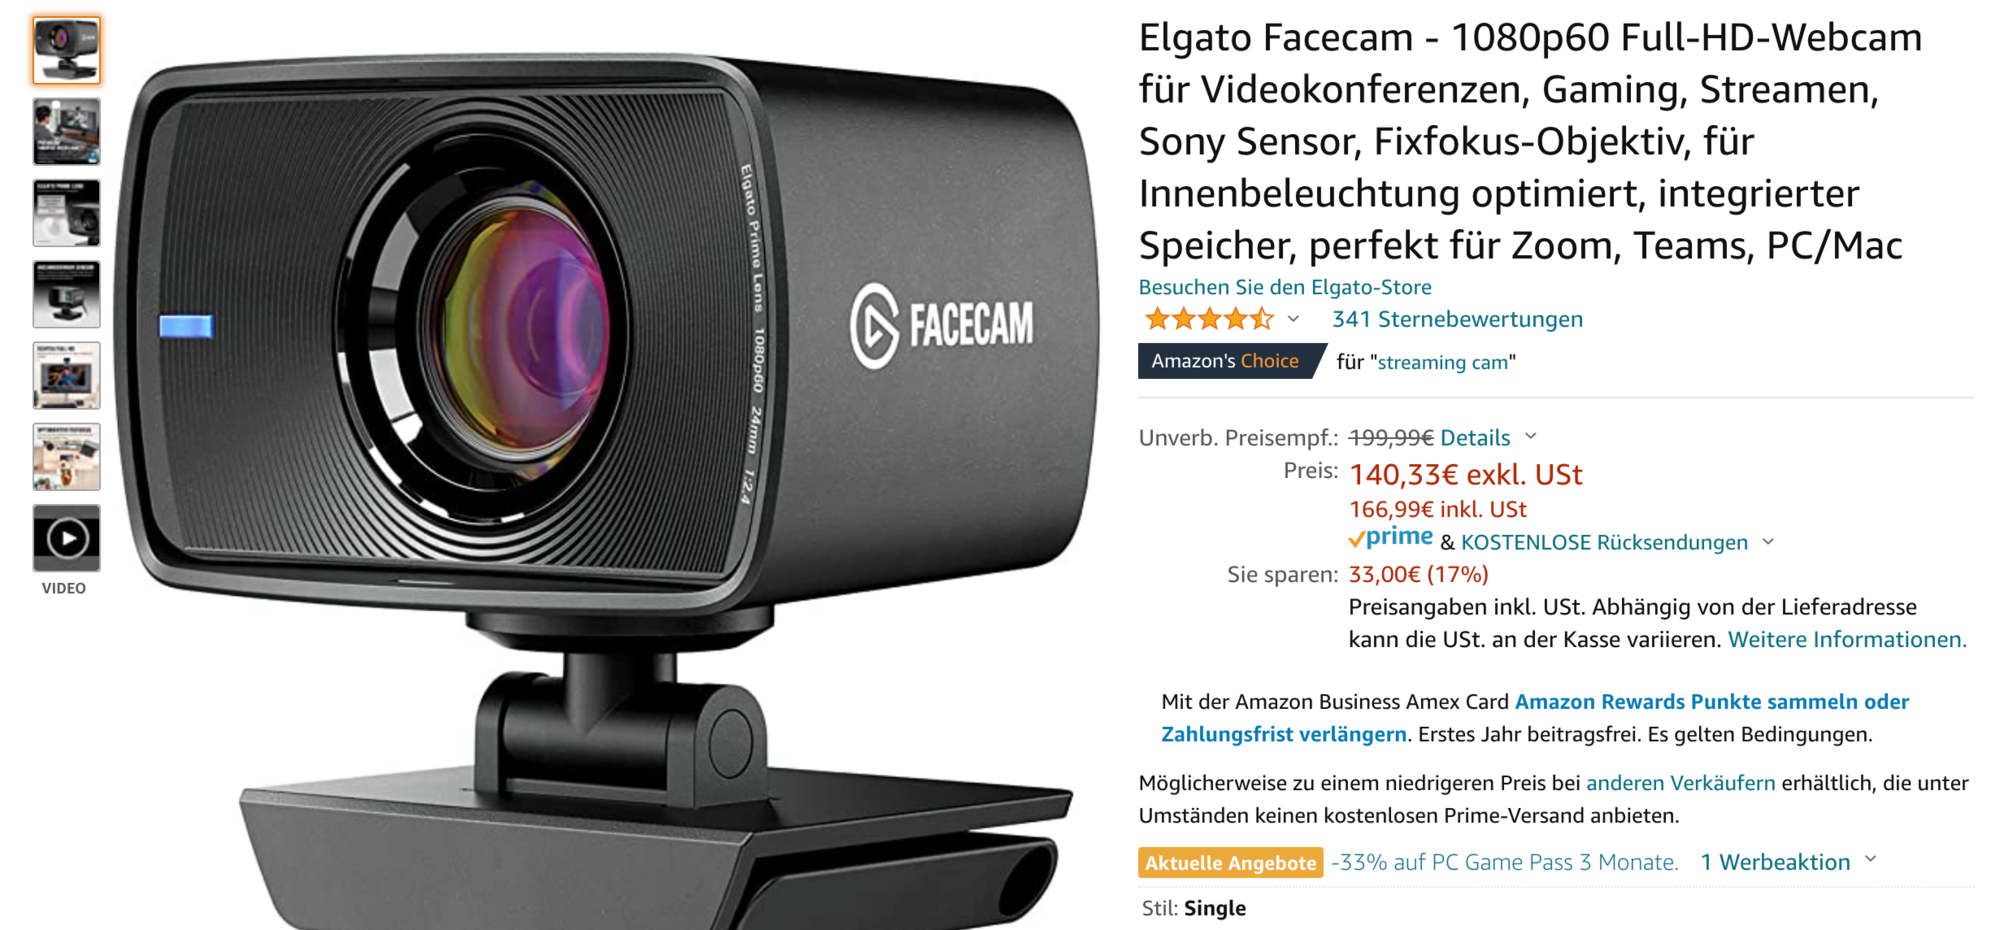 Die beste Webcam in 2022: Elgato Facecam.